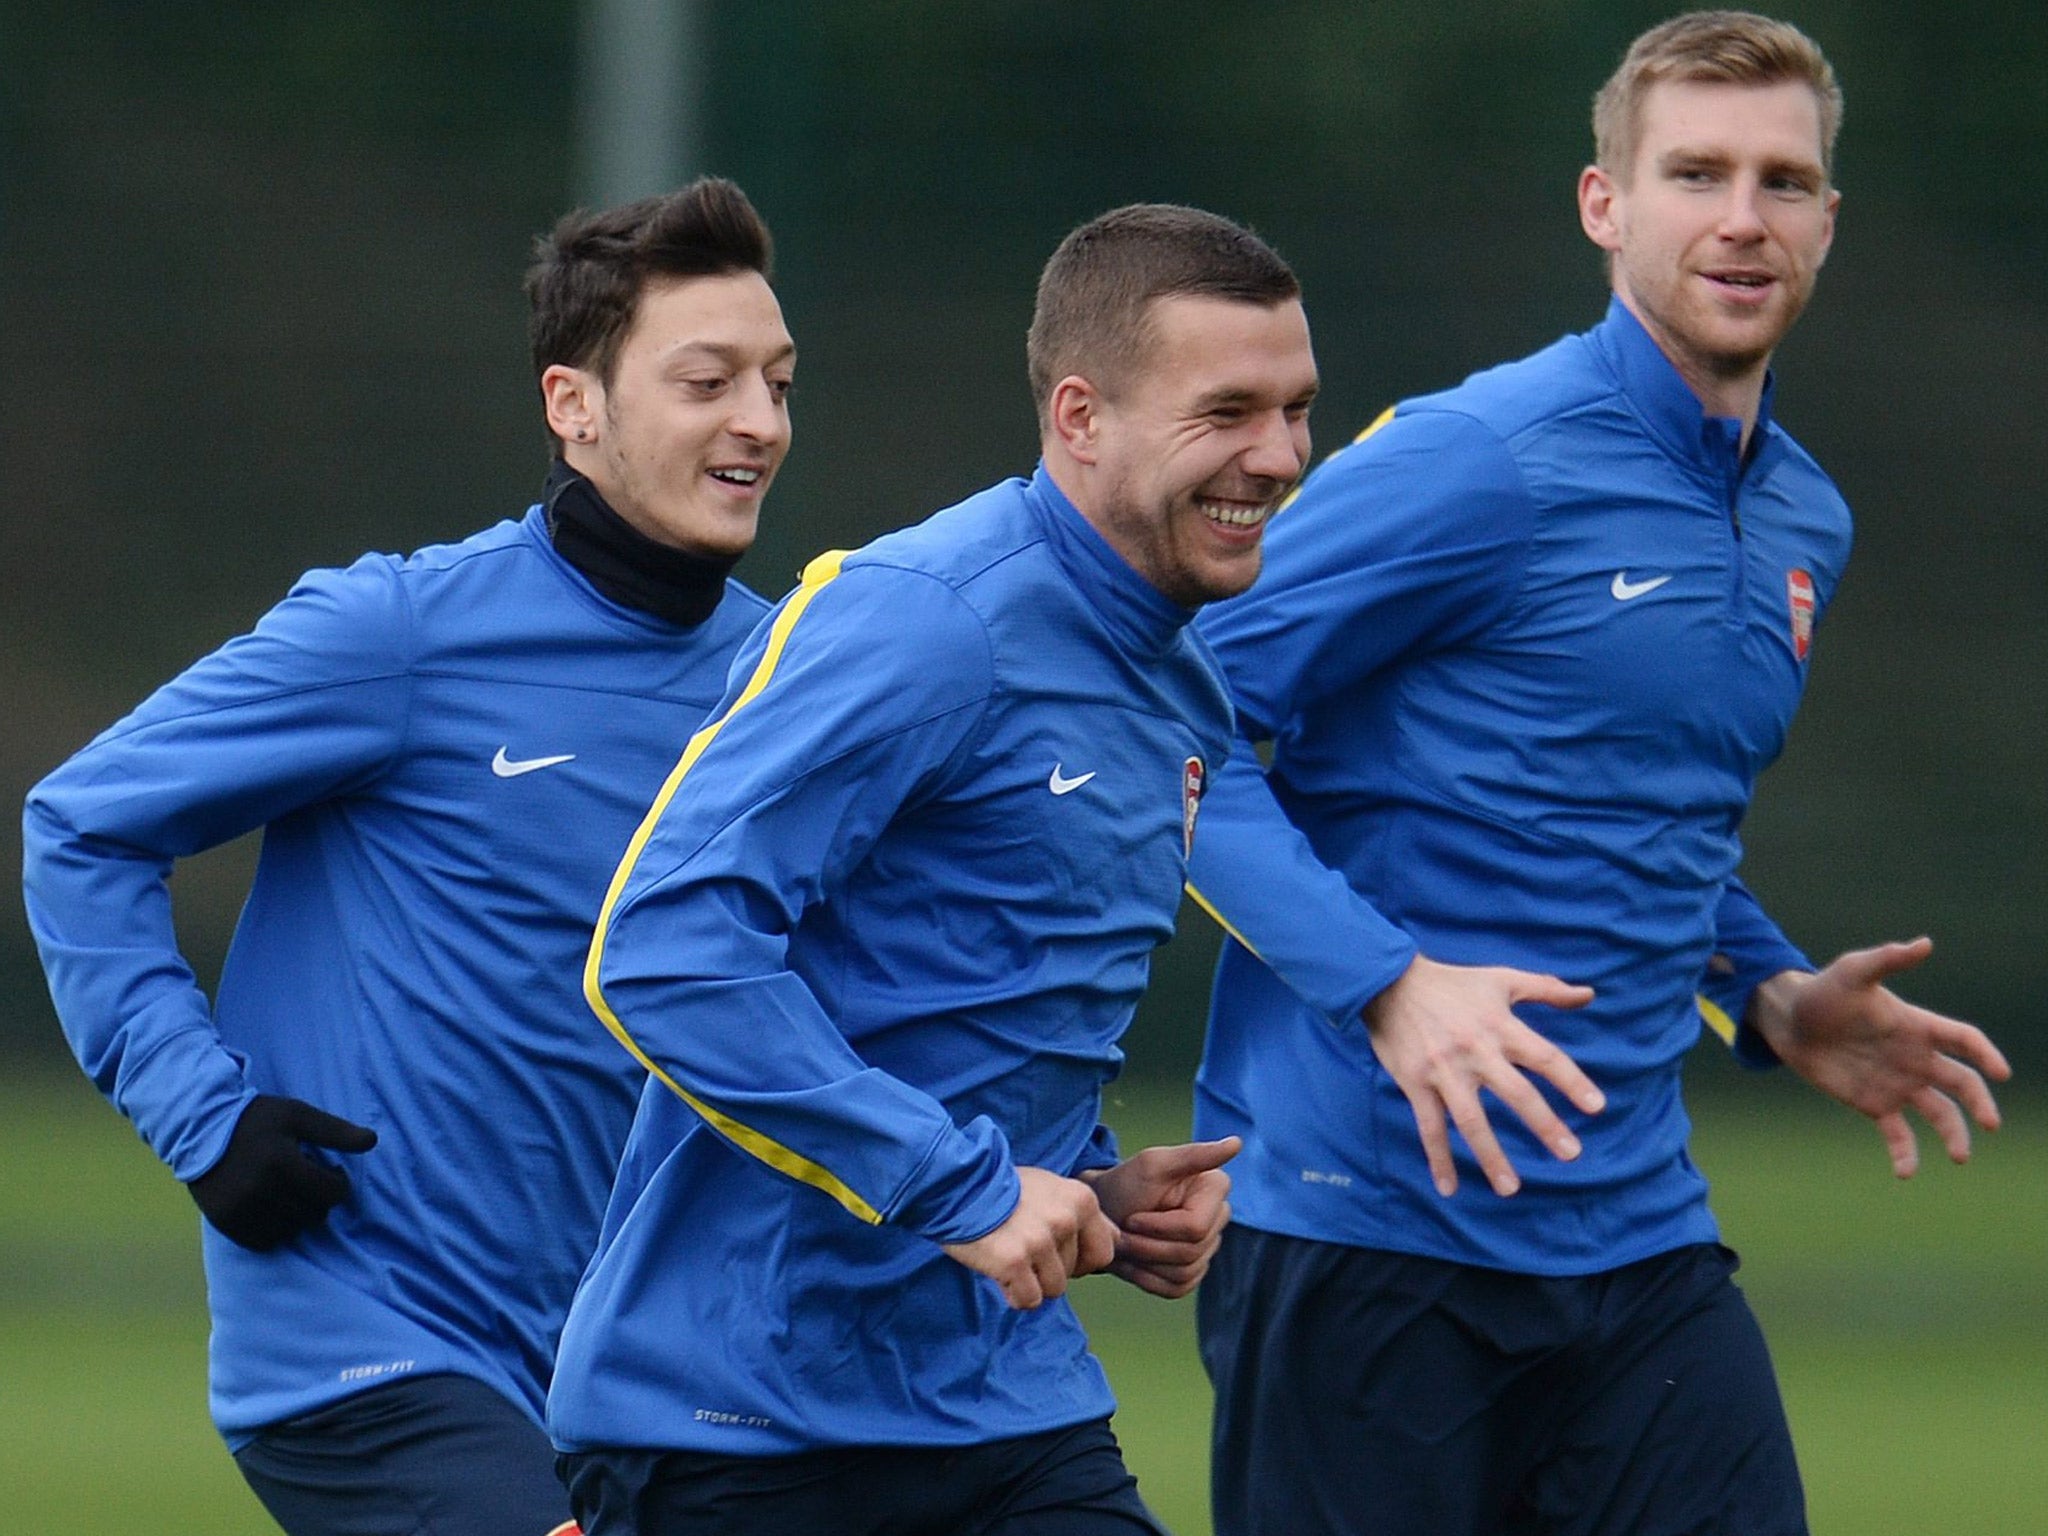 Arsenal’s German contingent of (left to right) Mesut Özil, Lukas Podolski and Per Mertesacker share a joke in training